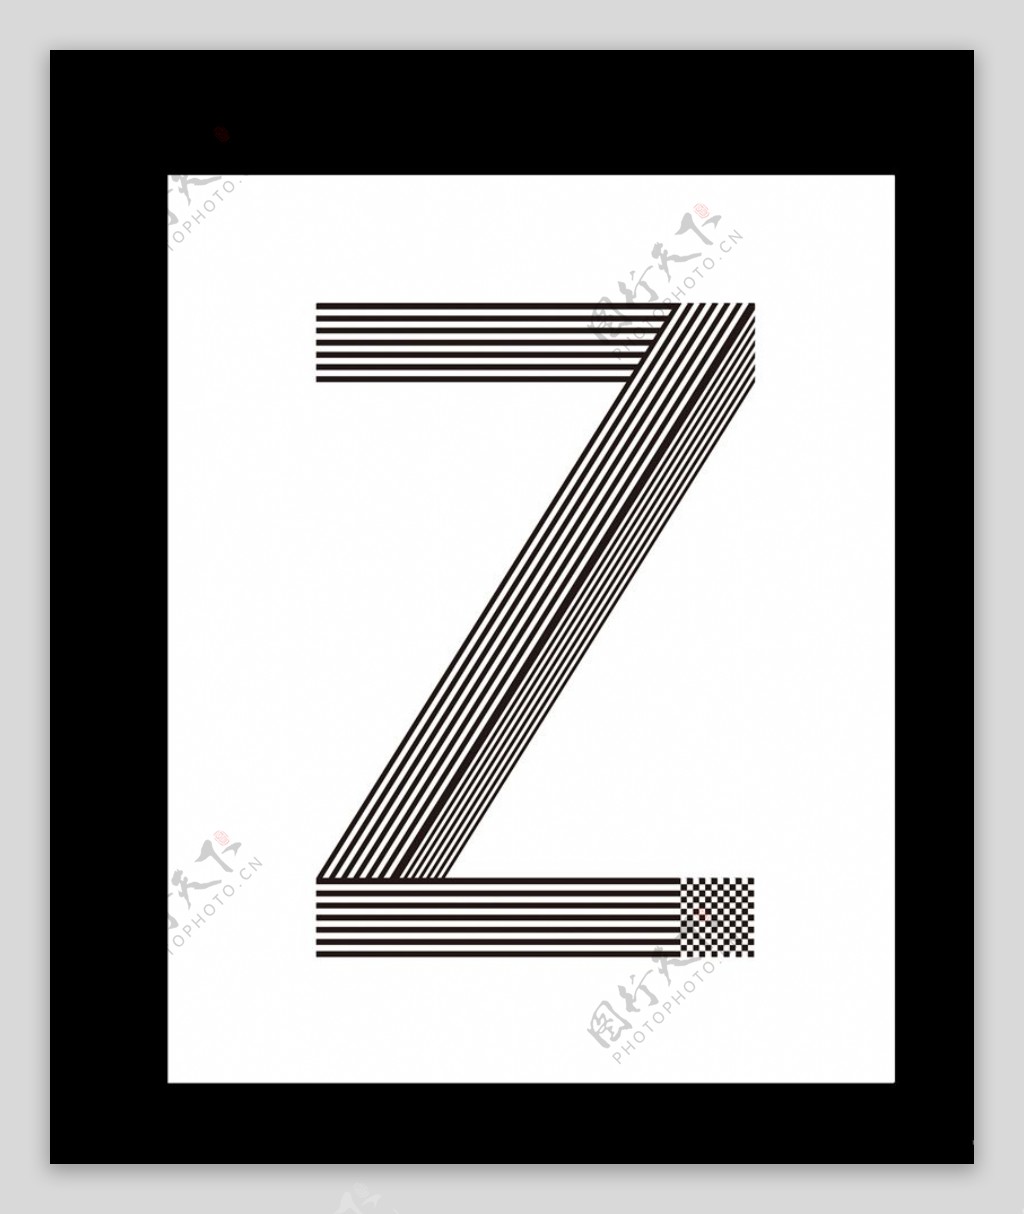 Zz字母设计创意字体设计